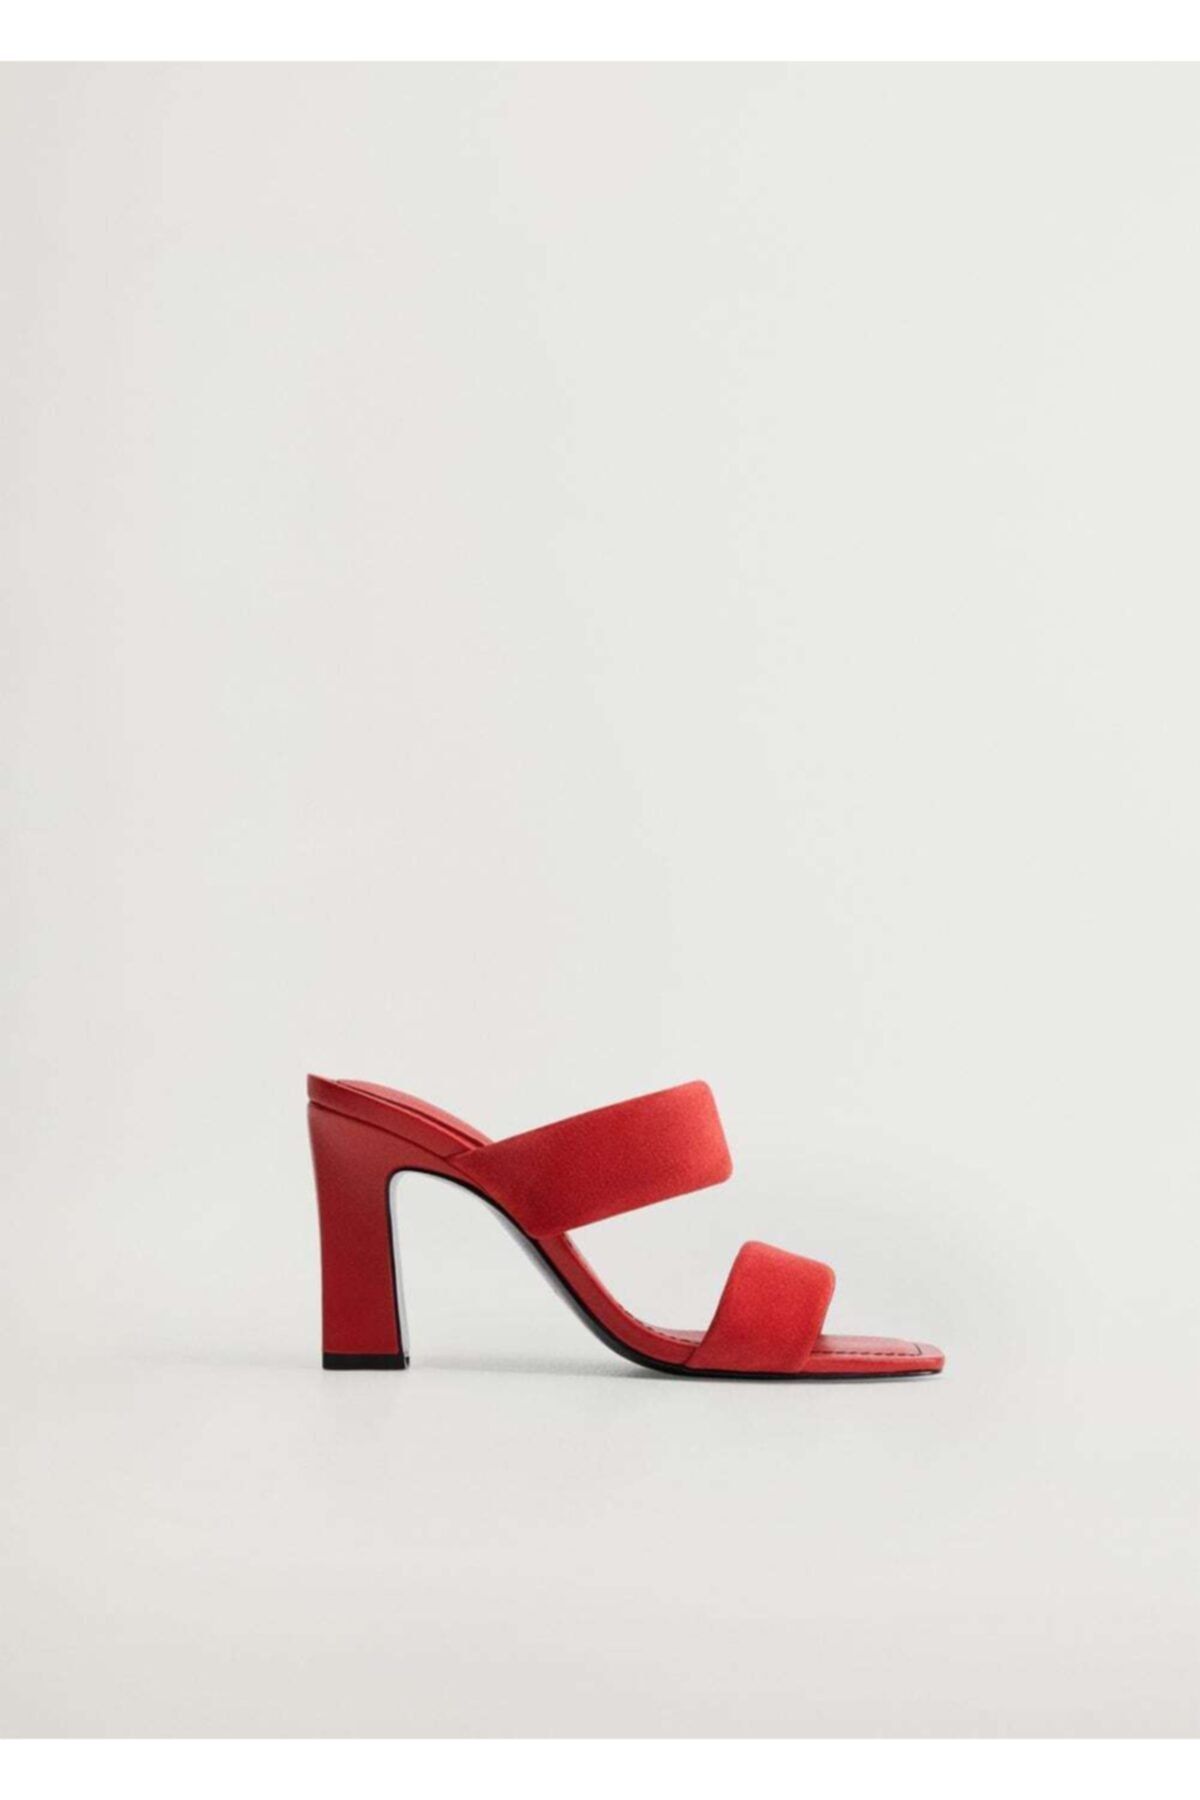 MANGO Kadın Kırmızı Deri Bantlı Sandalet 77020045